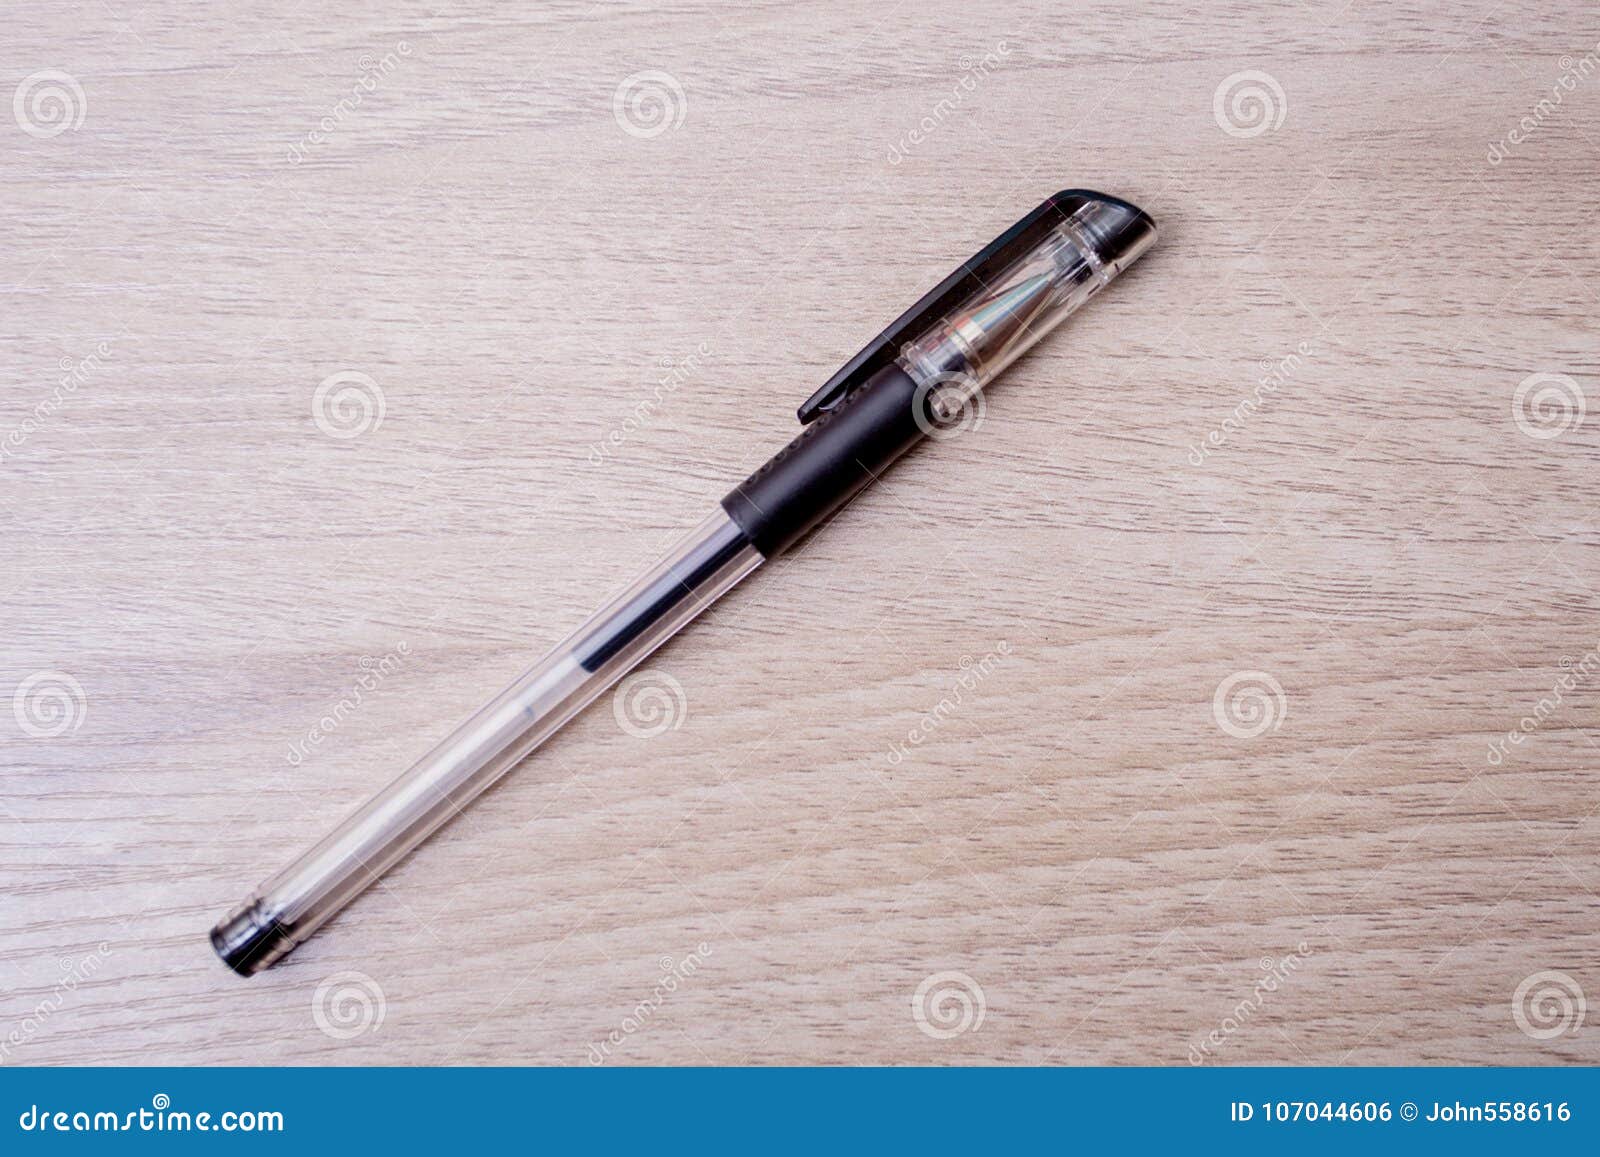 a ballpoint pen